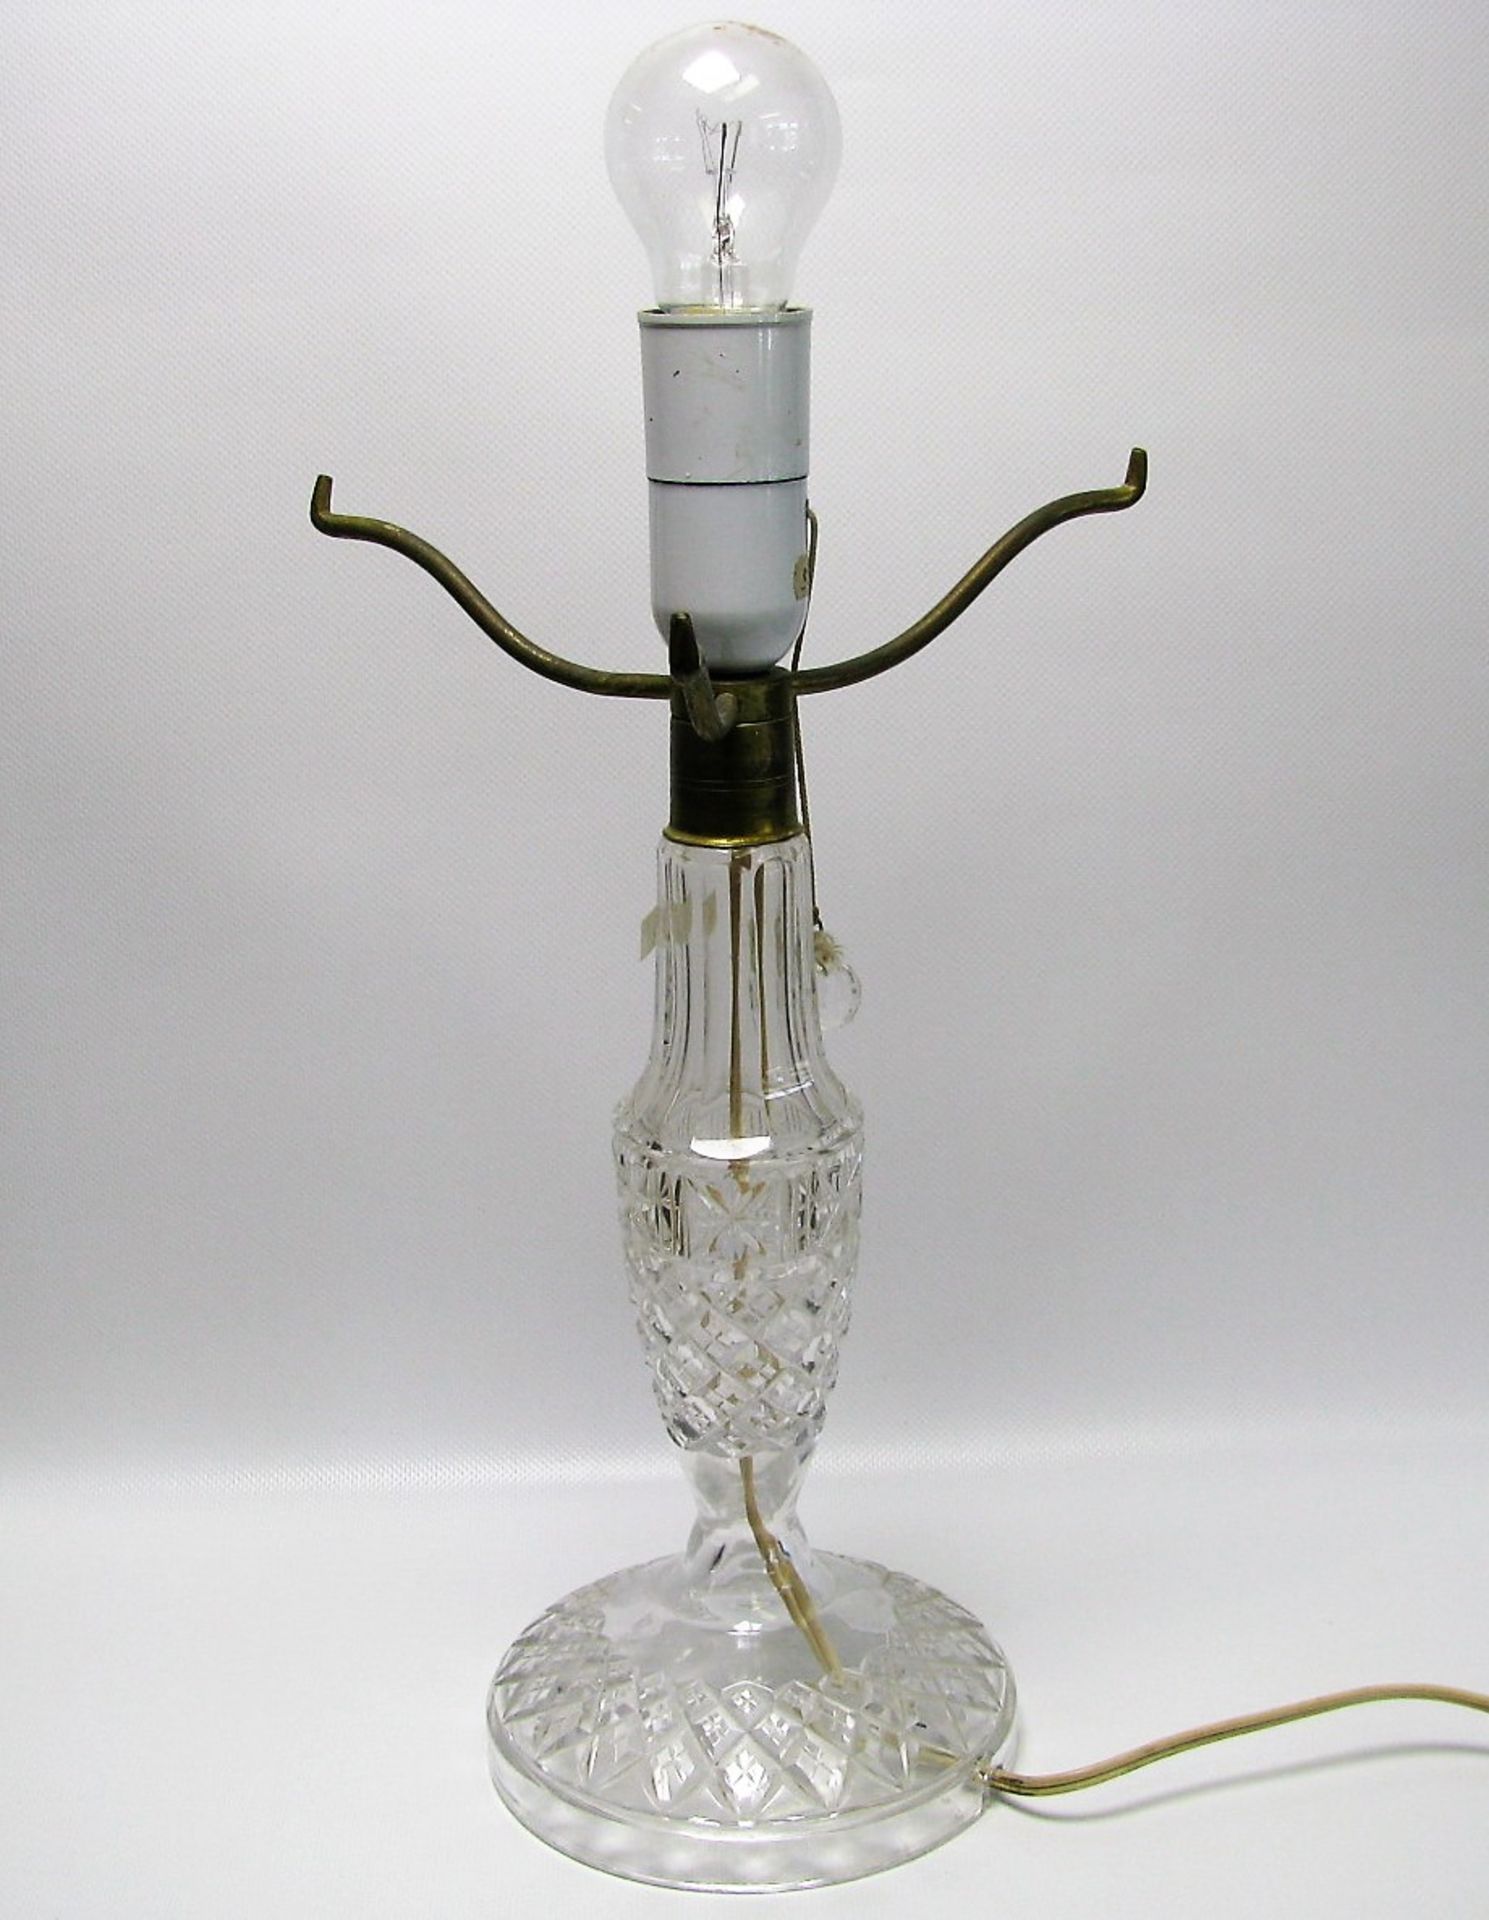 Tischlampenfuß, Bleikristall beschliffen, 1. Hälfte 20. Jahrhundert, h 45 cm, d 15 cm.